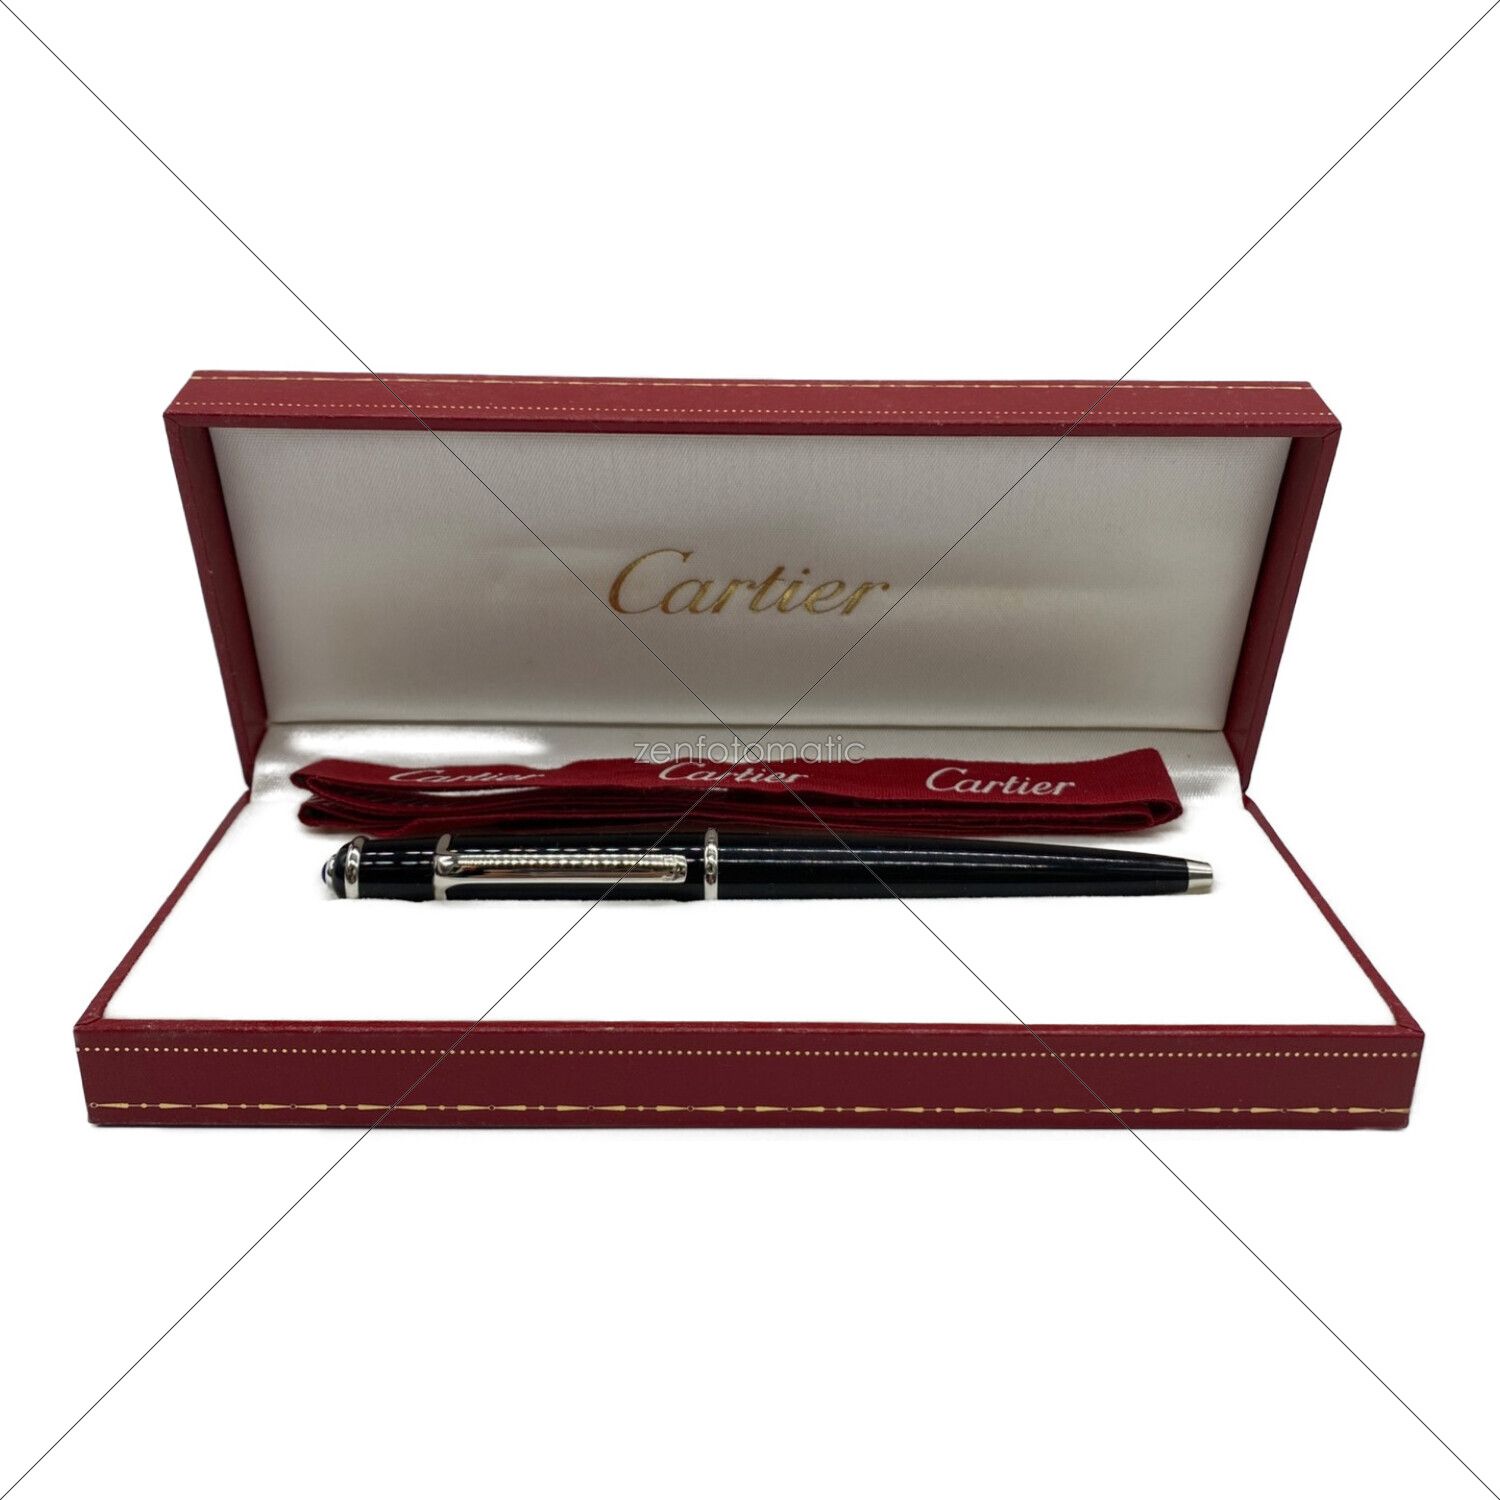 Cartier (カルティエ) ボールペン ディアボロドゥカルティエ ST180010 